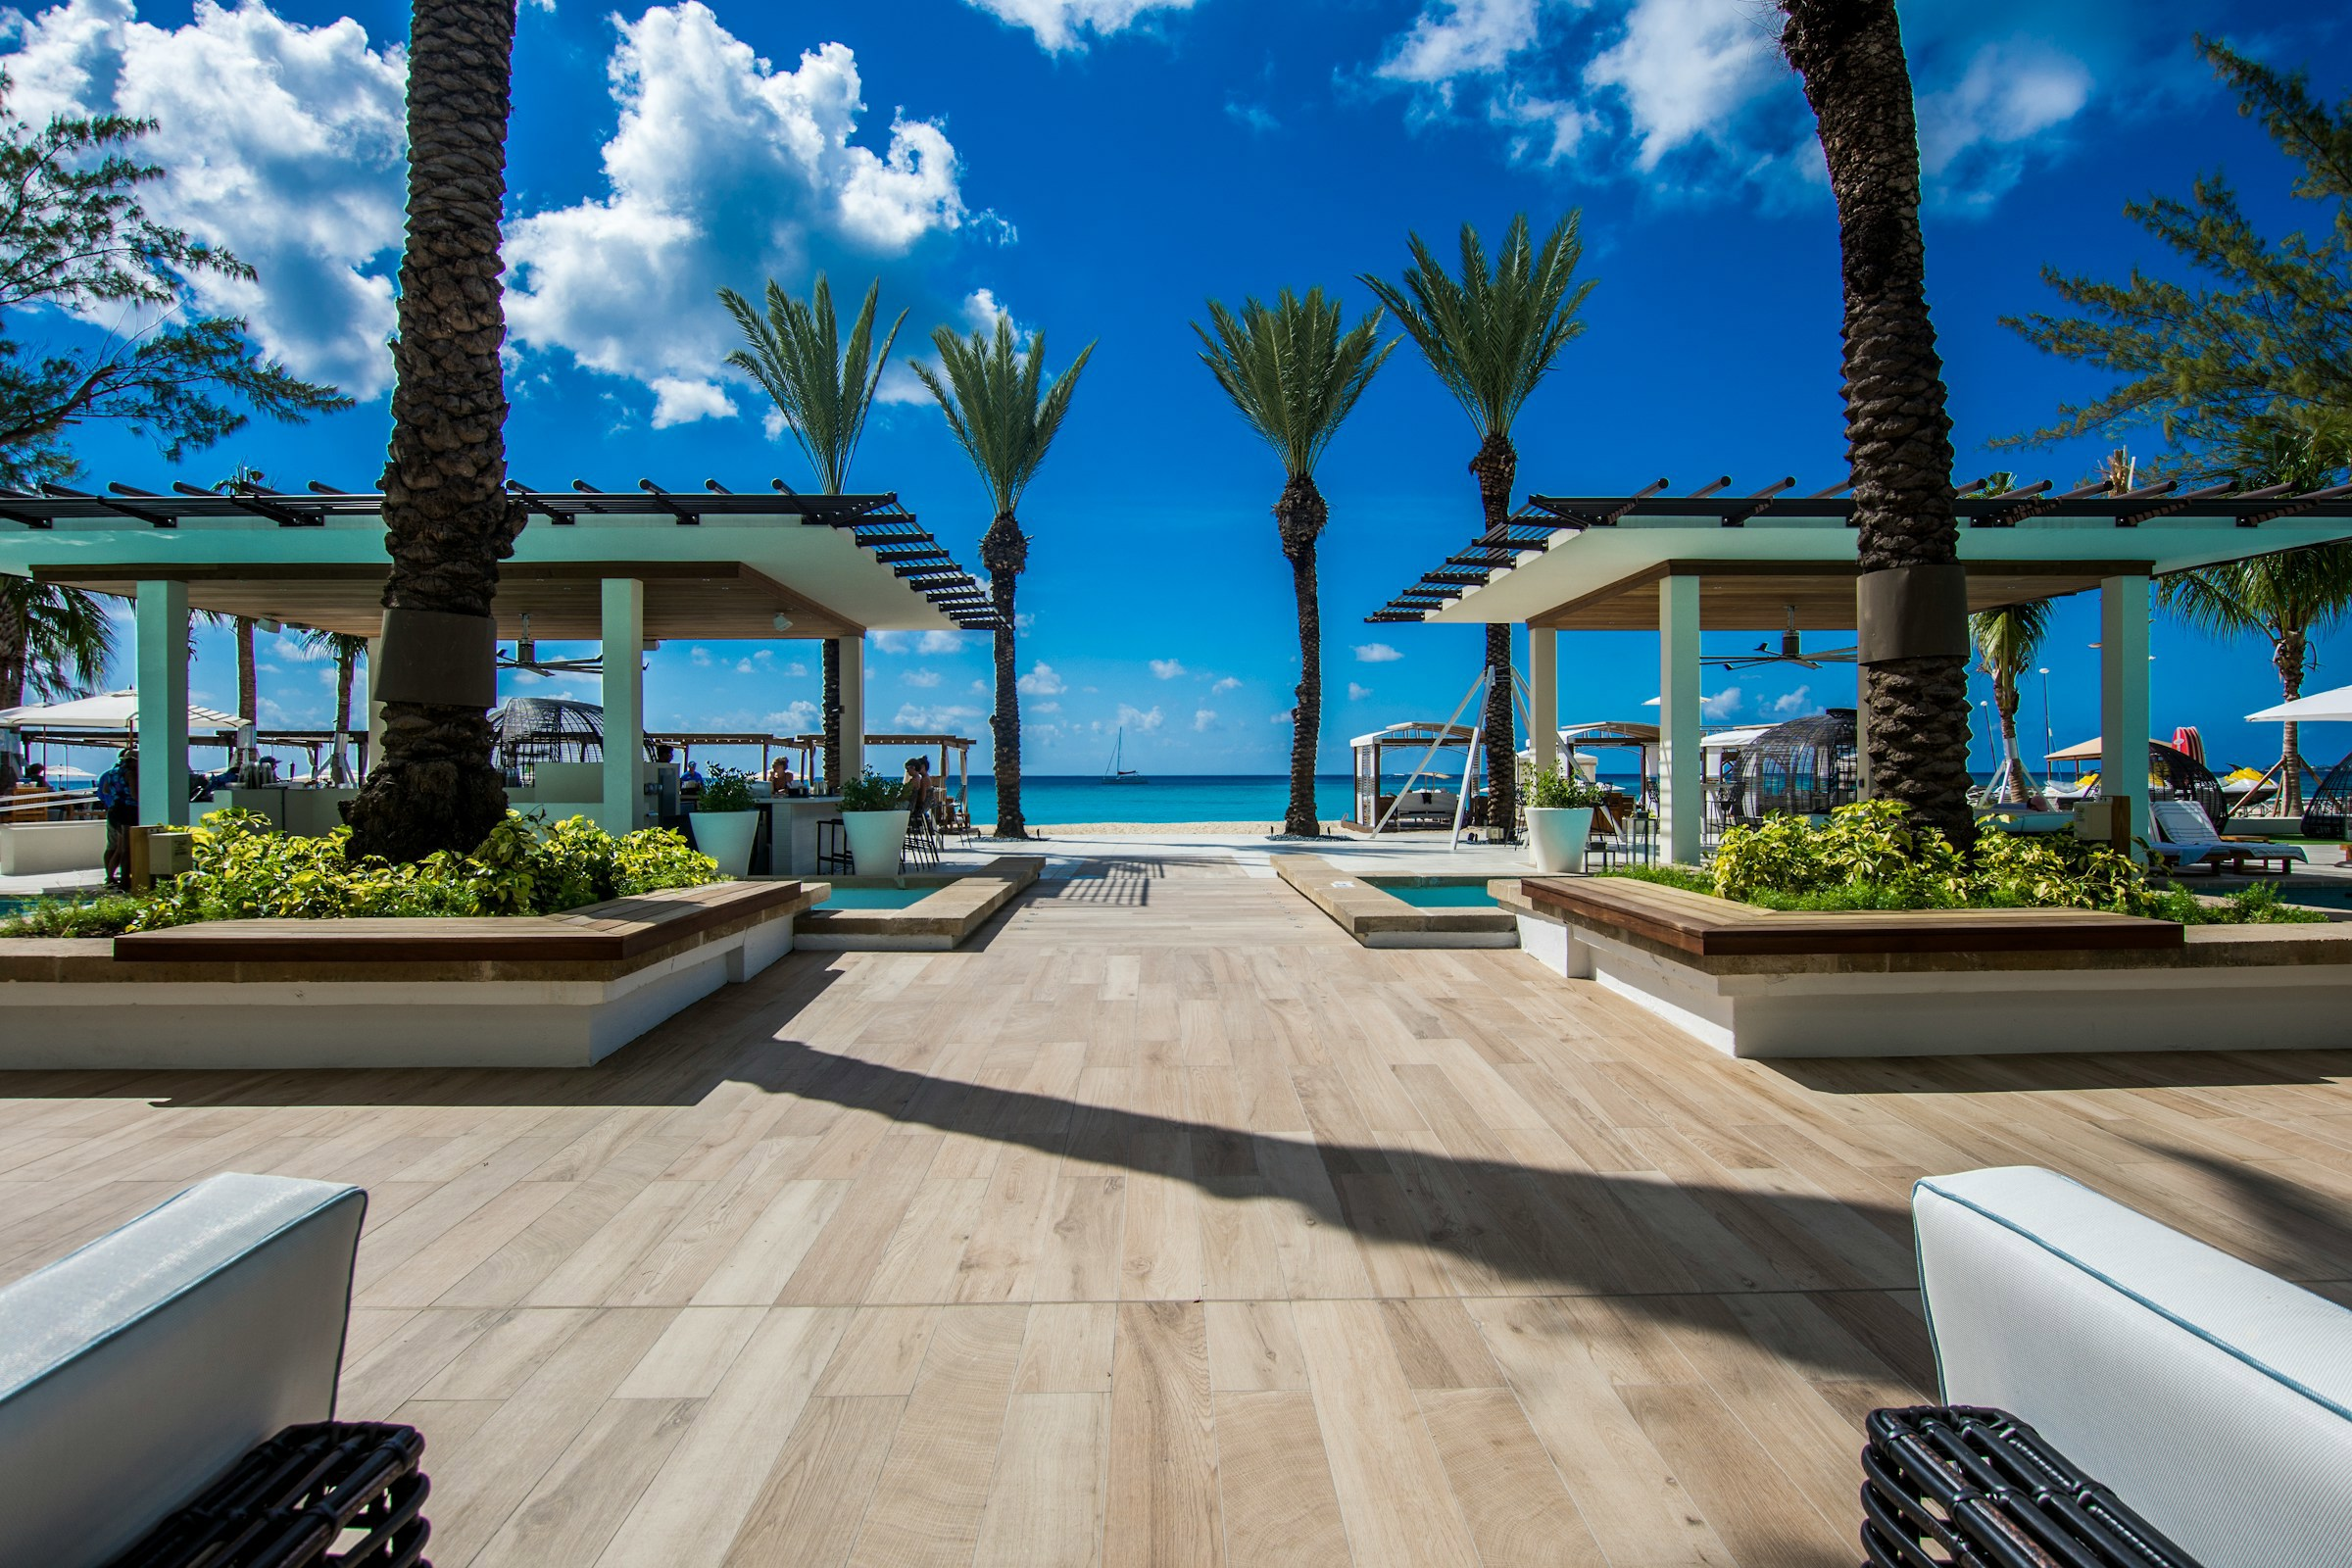 Tropisk strandresort på Caymanöarna med uteservering och solsängar, omgivet av palmer och utsikt över klarblå himmel och hav.